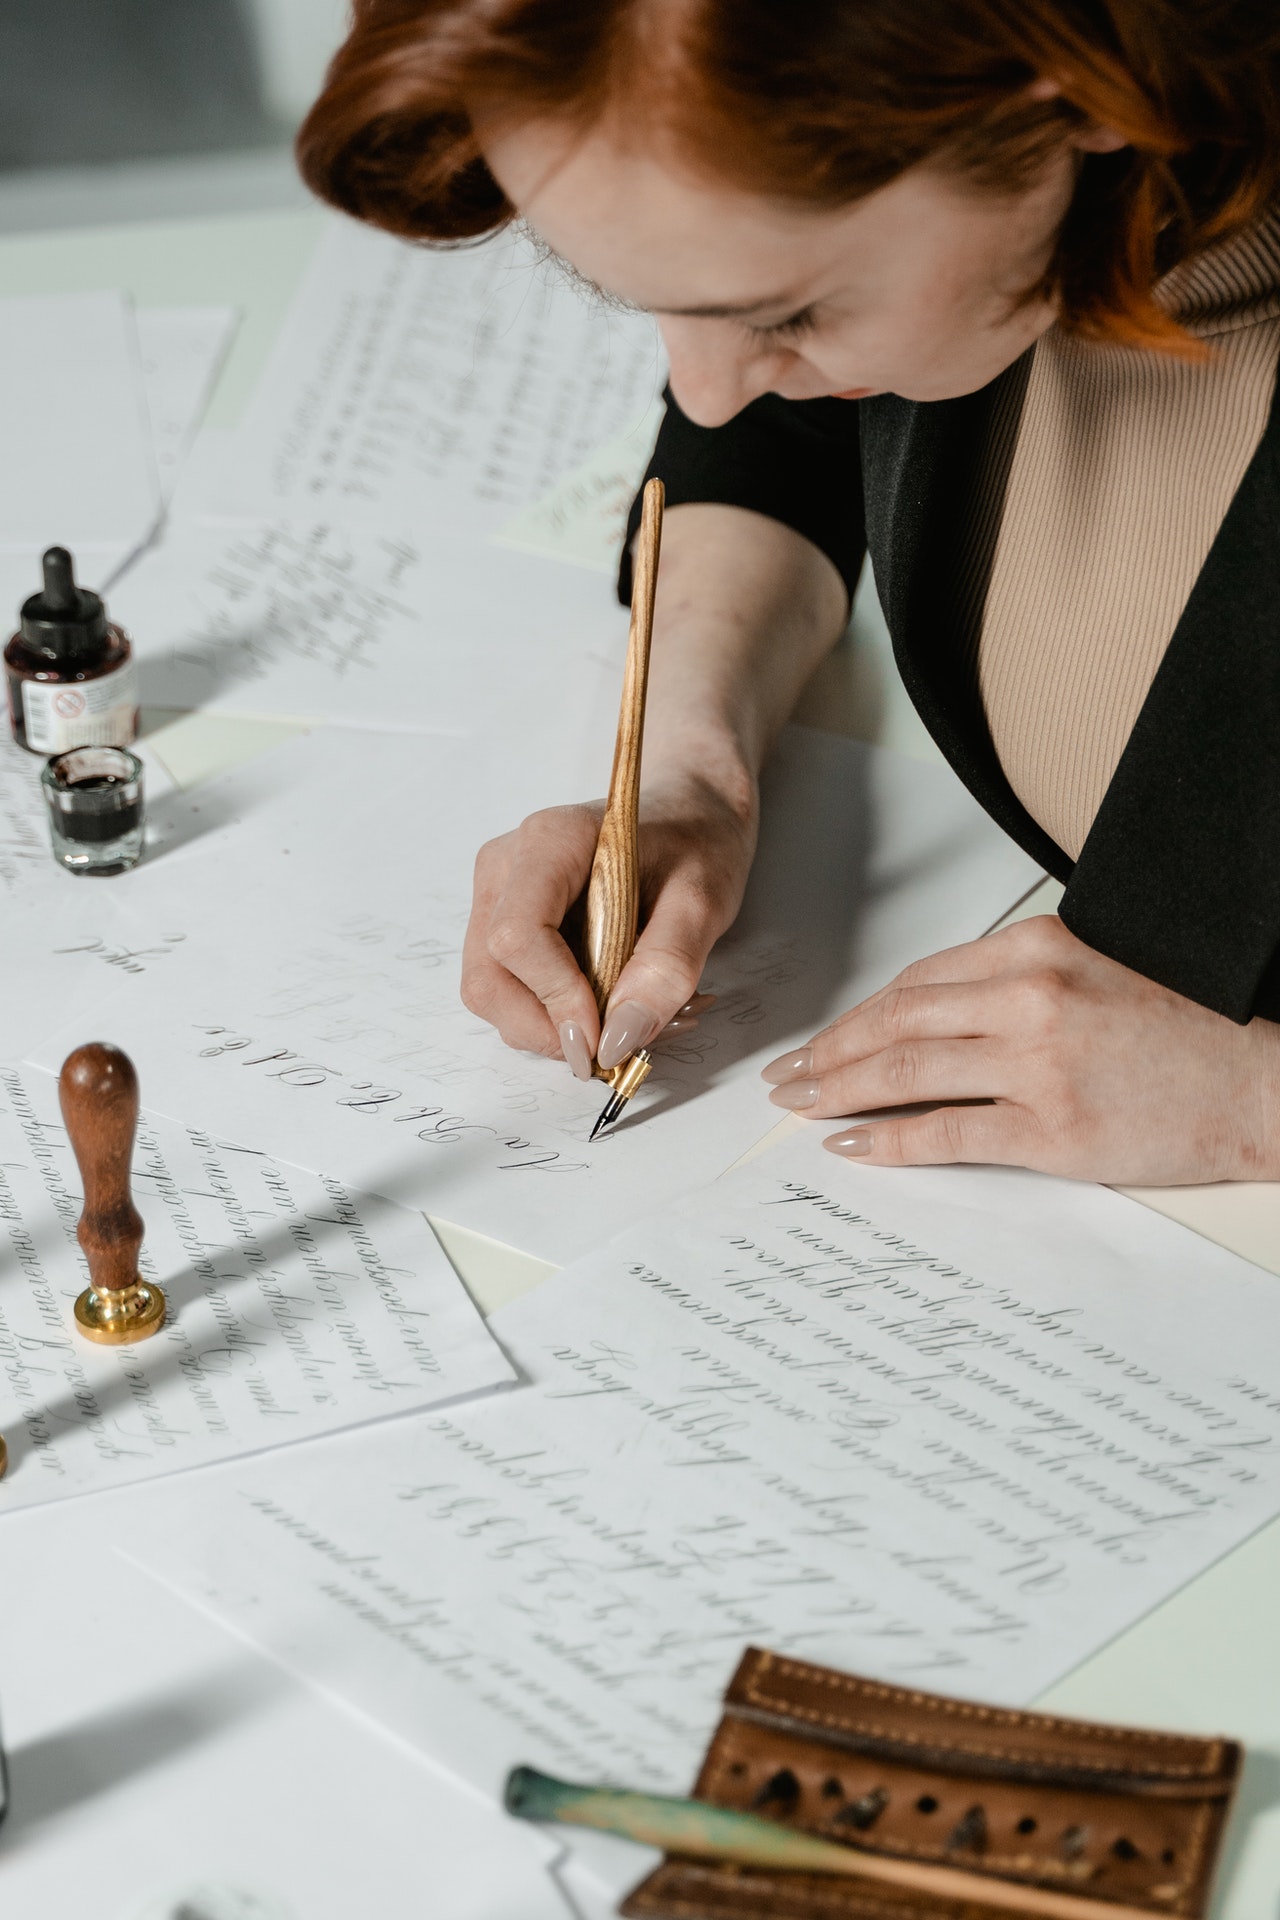 tập calligraphy giúp cải thiện khả năng tập trung